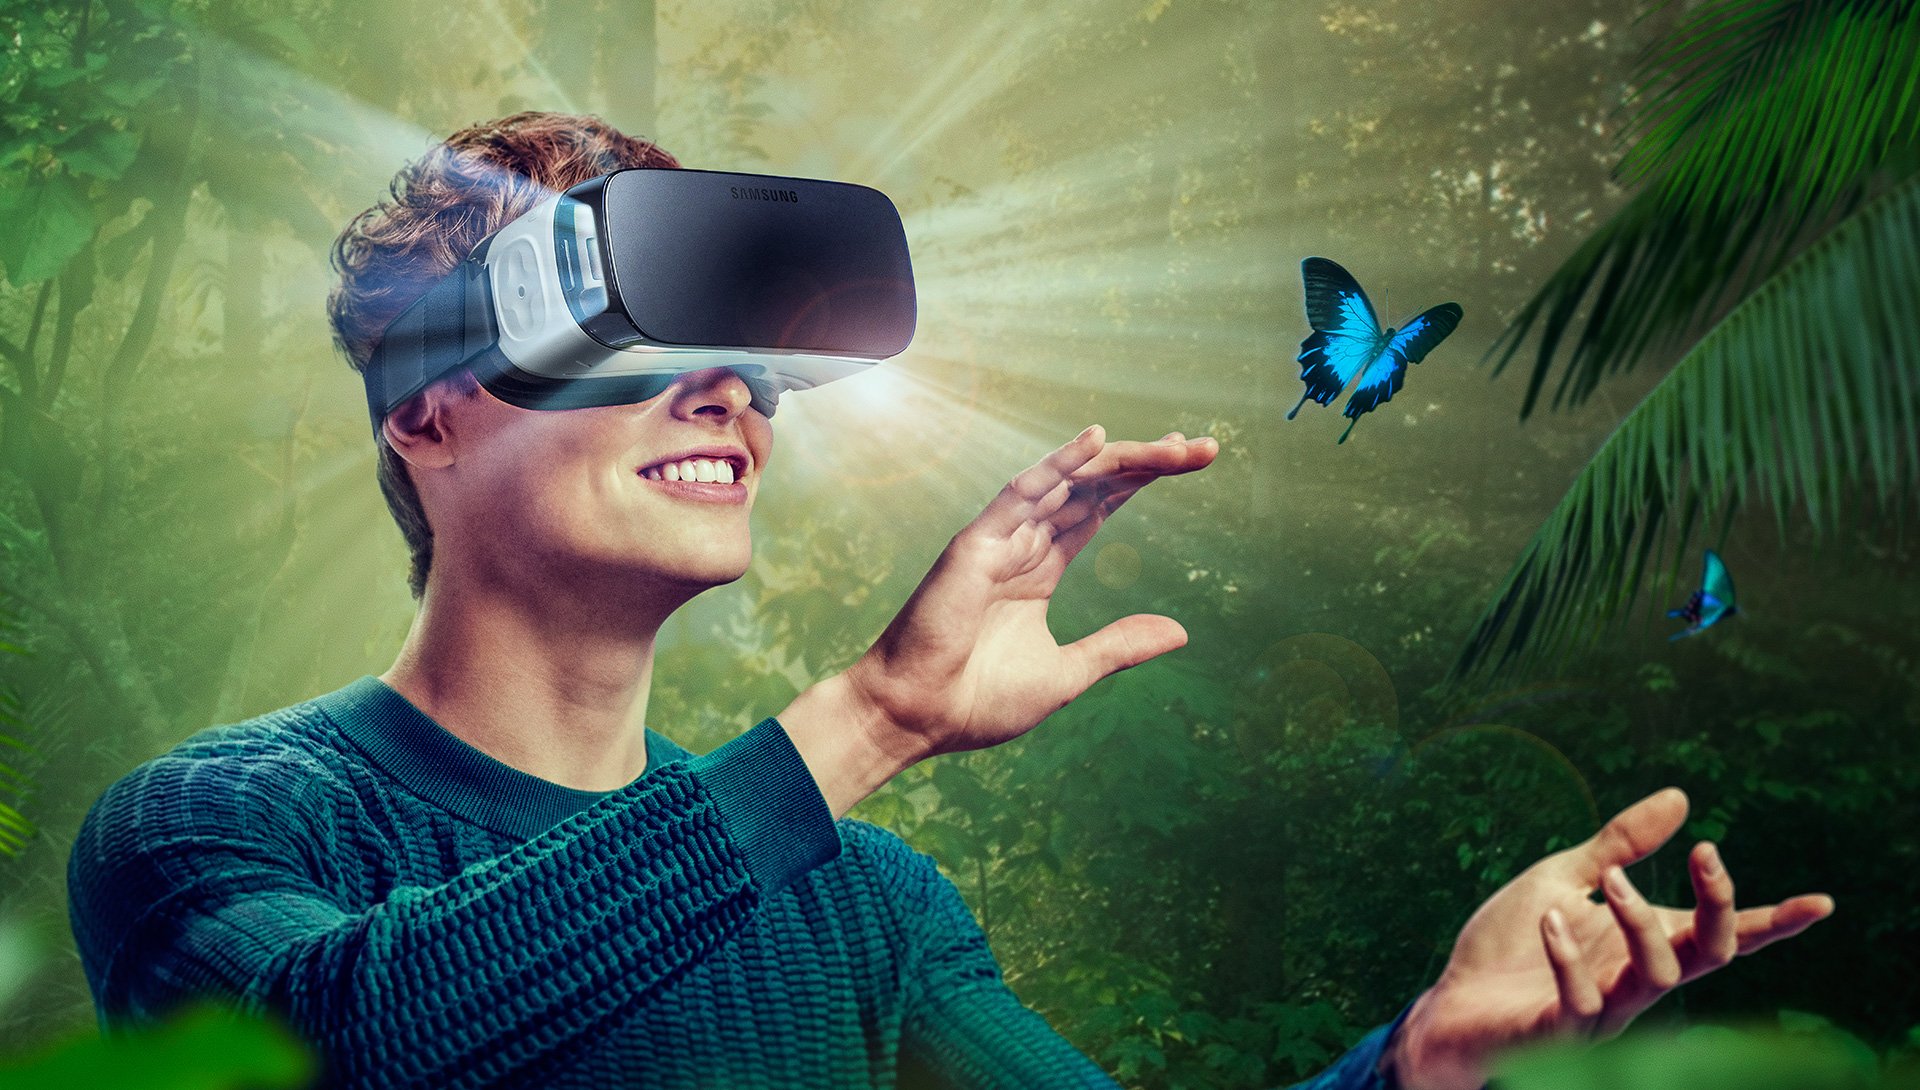 Выпустить виртуальный мир. Виртуальная реальность (Virtual reality, VR). Визуальная реальность. Иртуальная реальность. Очки виртуальной реальности на человеке.